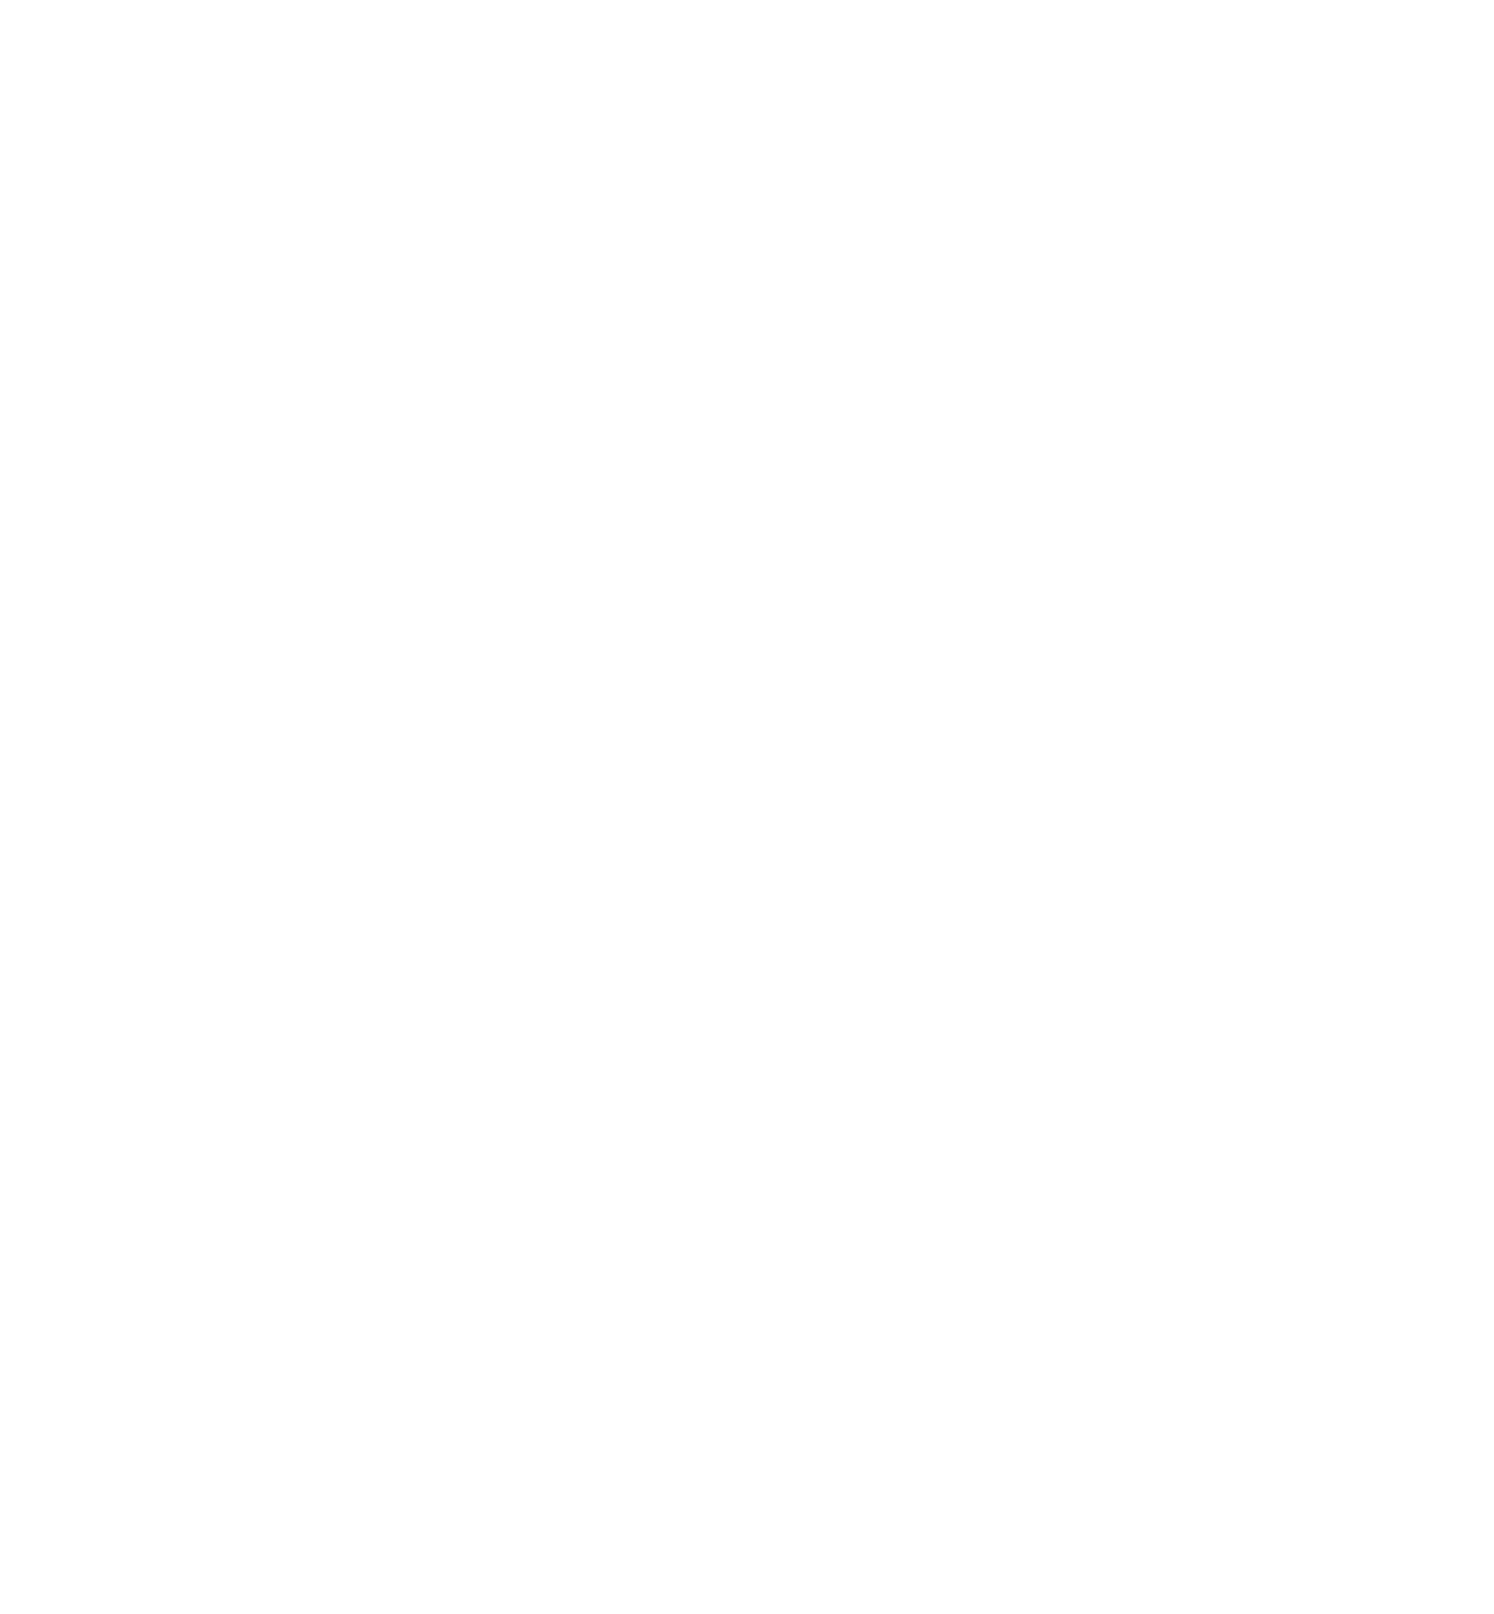 Egehaddel 93 Schiltach e.V.